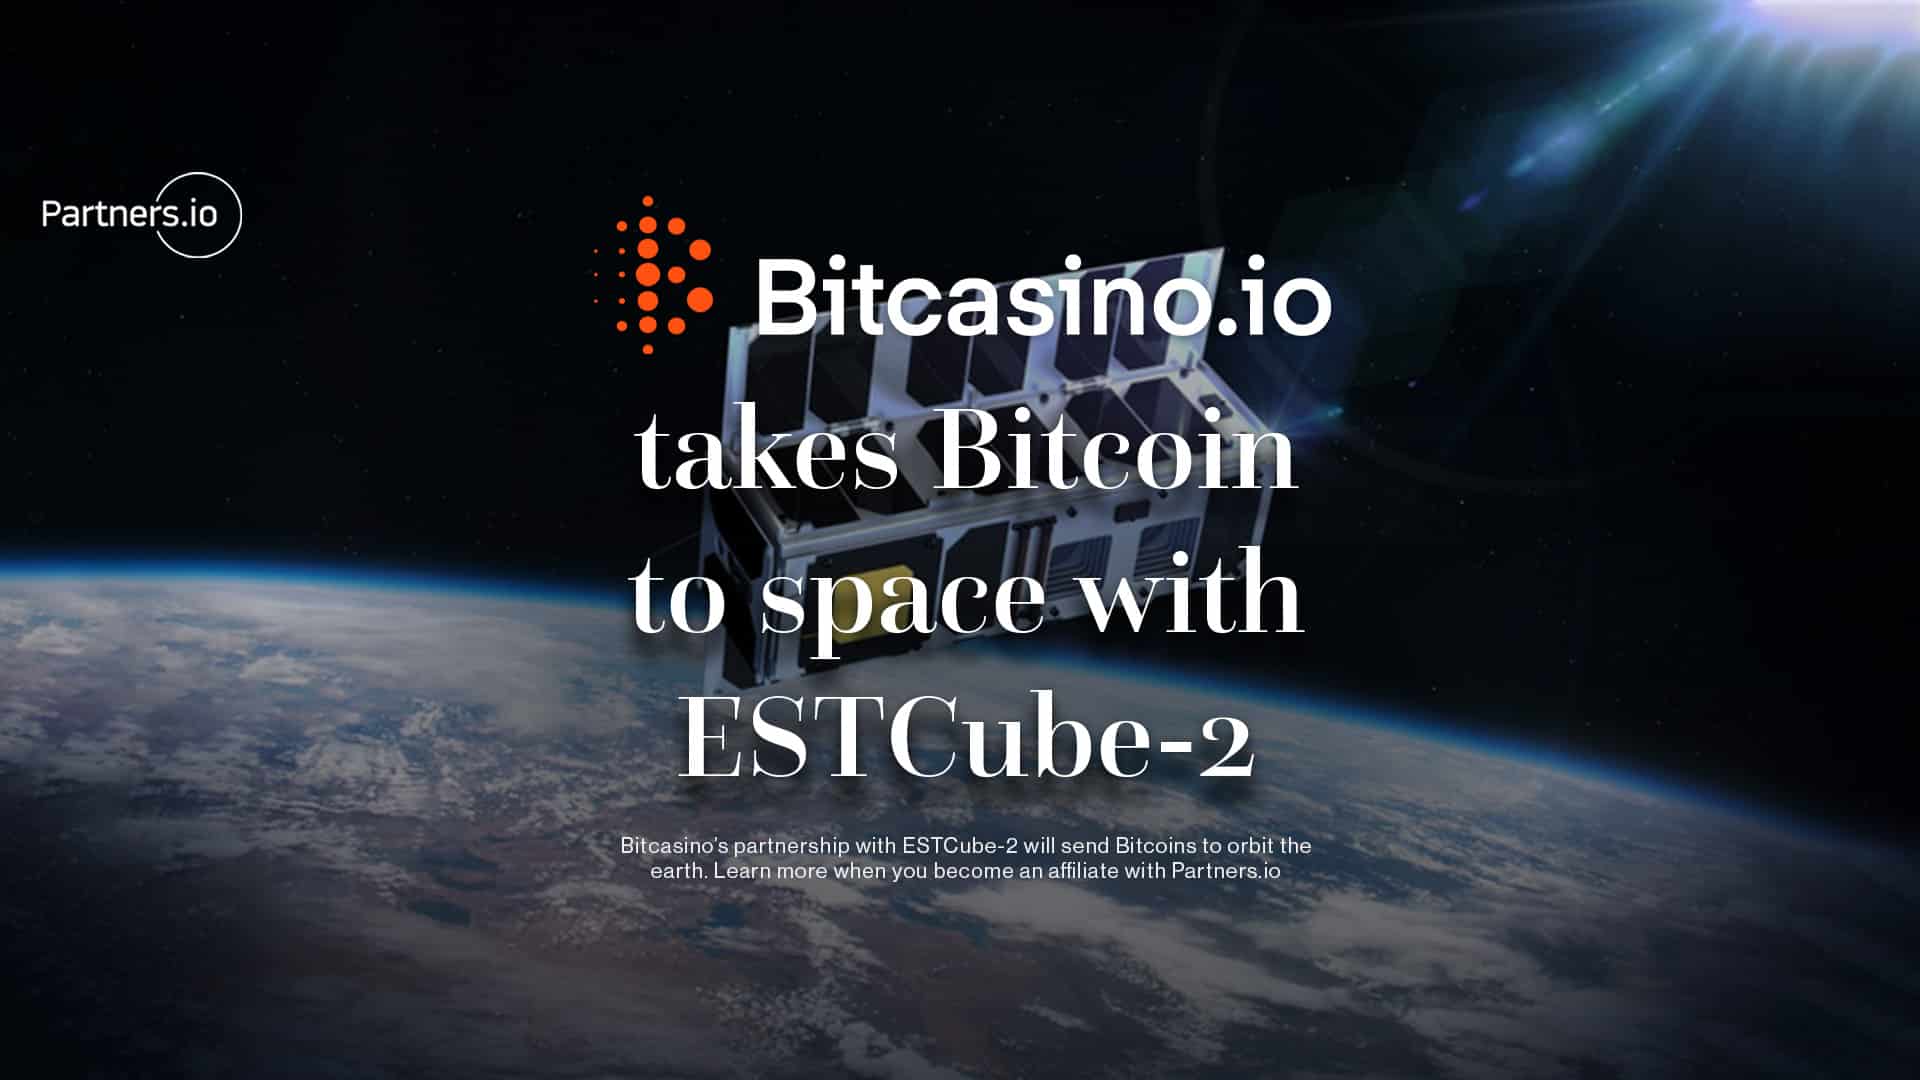 Bitcasino takes Bitcoin to space with ESTCube-2